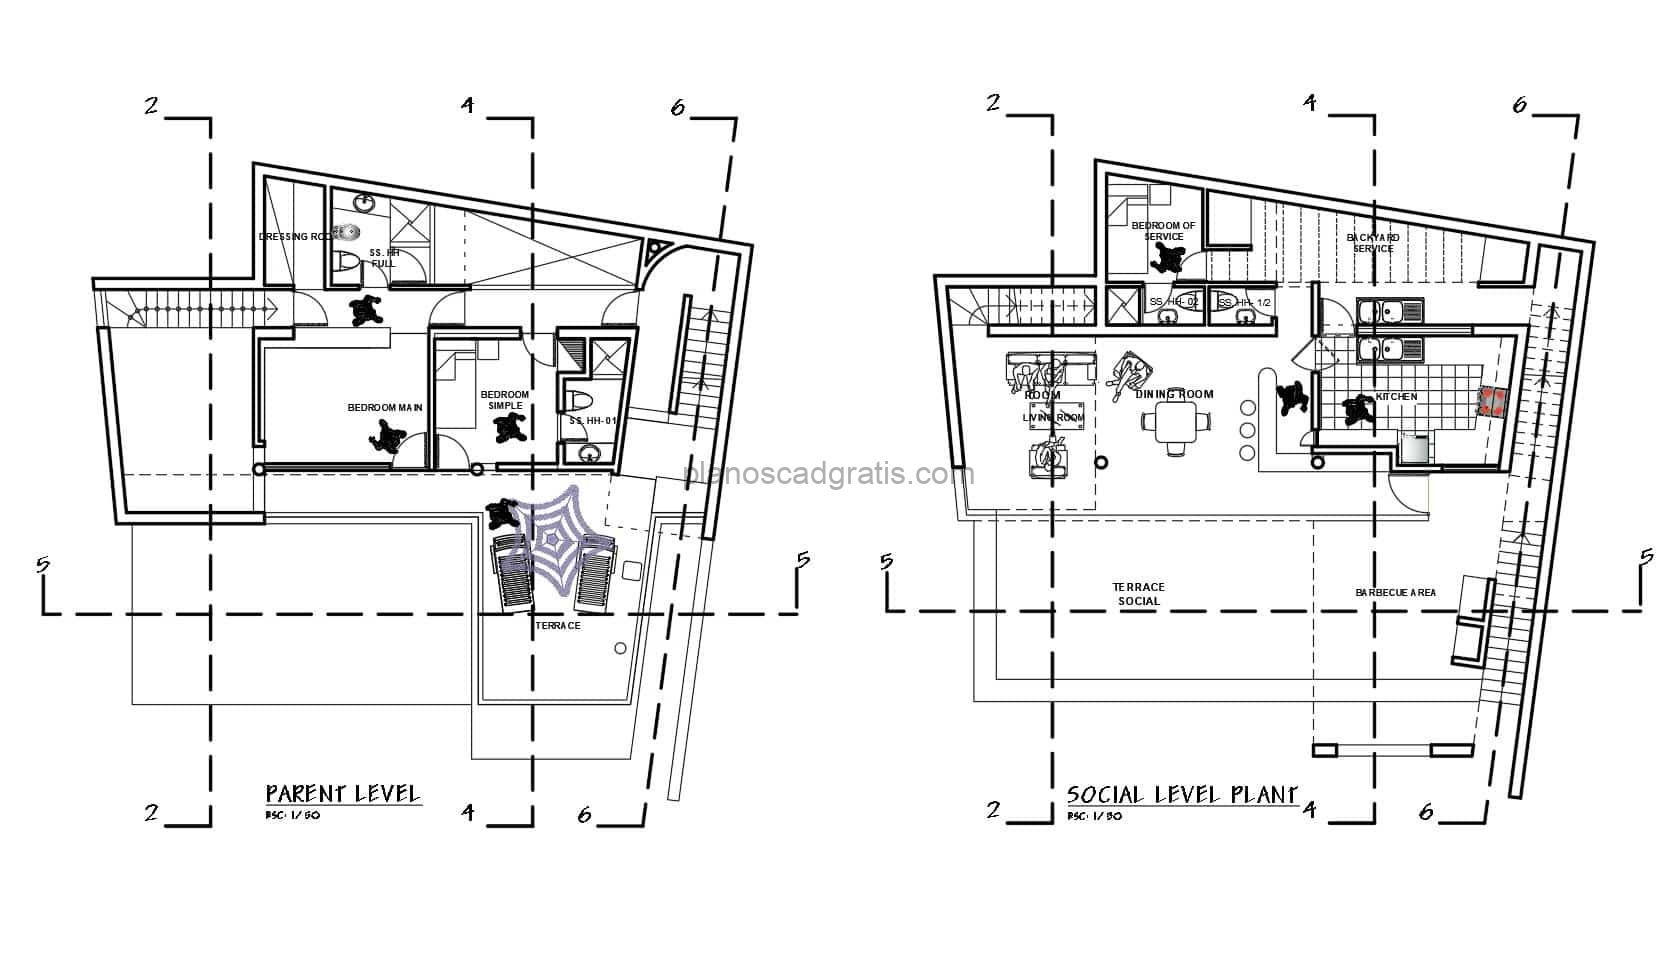 plano de autocad de casa moderna de dos pisos con terraza superior y habitaciones con baños independientes, planos dwg de autocad para descarga gratis